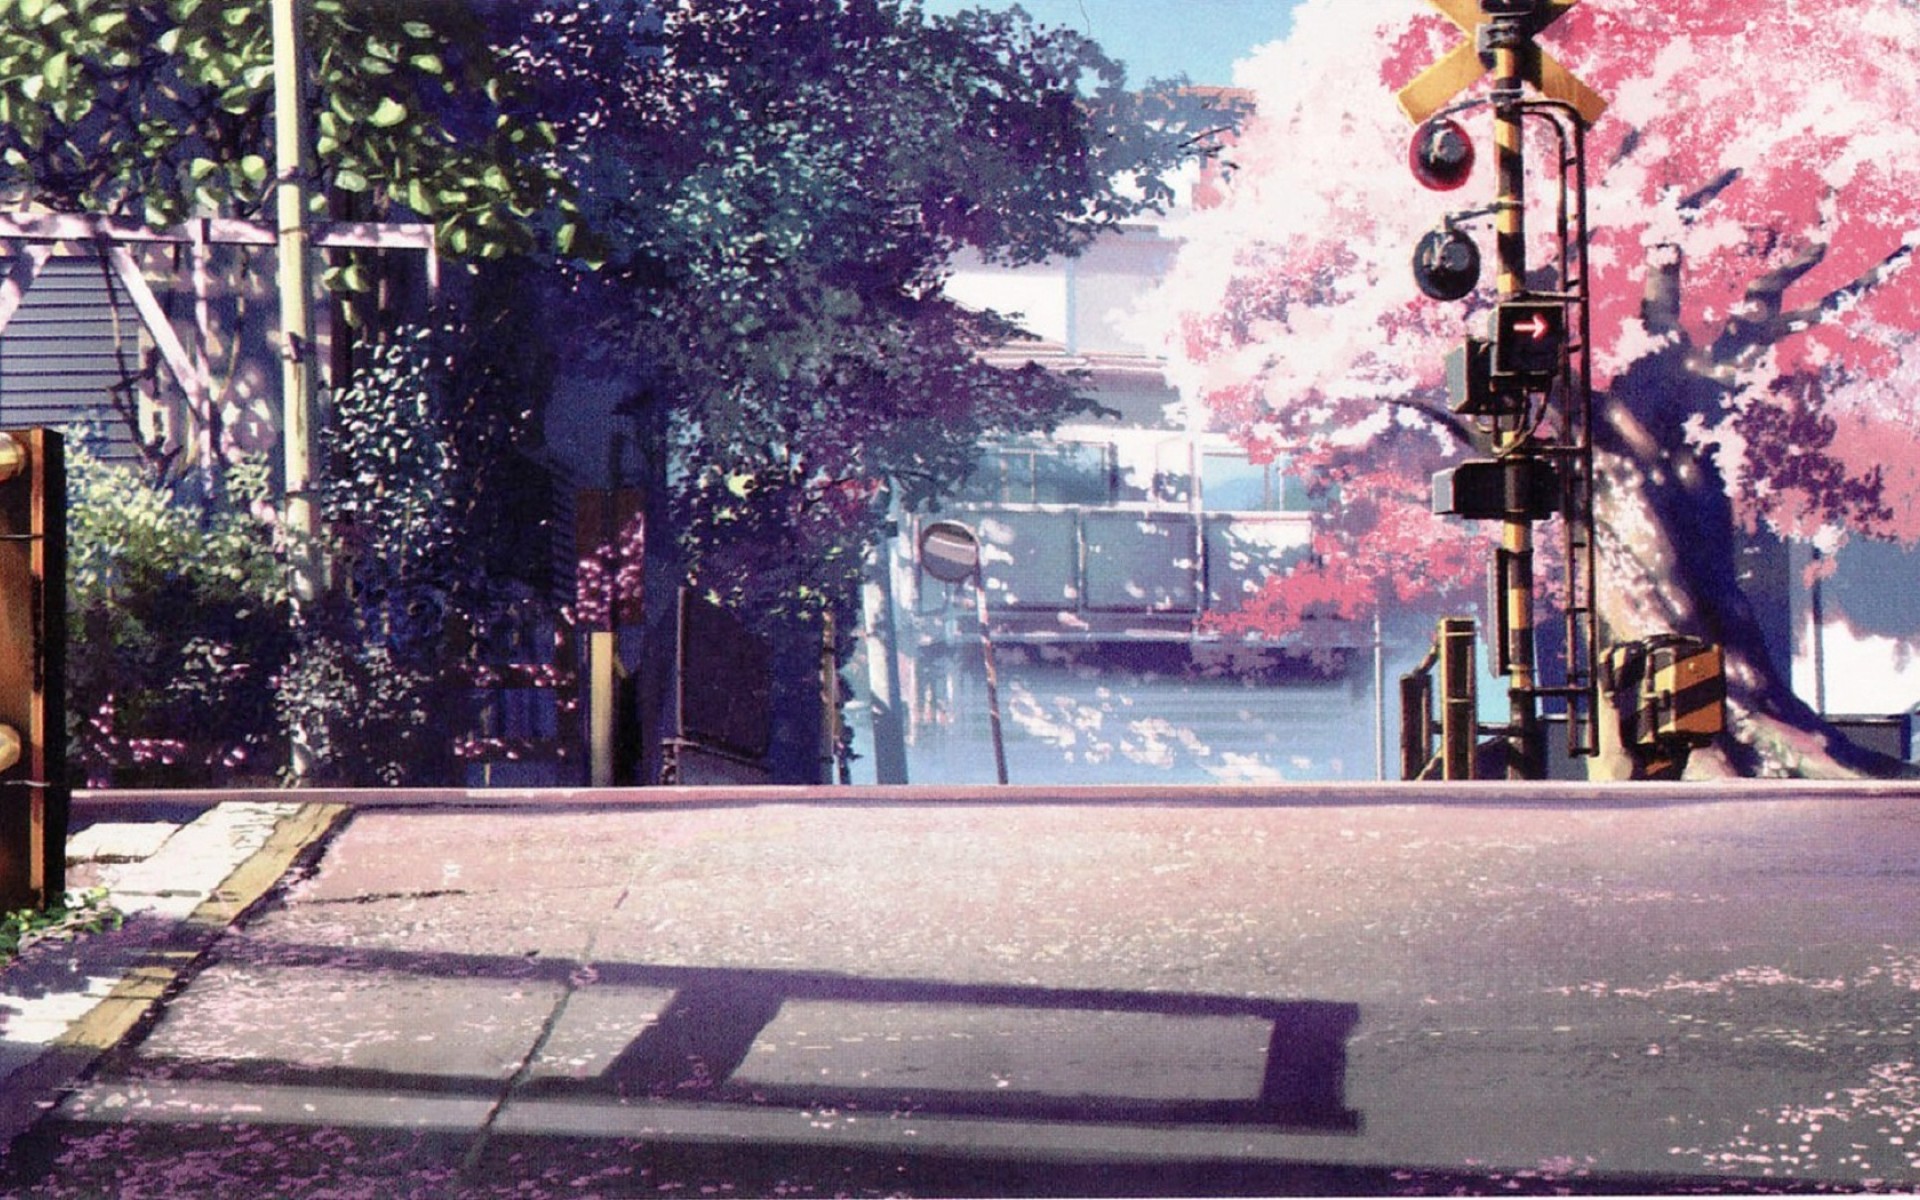 Anime Cherry Blossom Desktop Wallpaper | PixelsTalk.Net